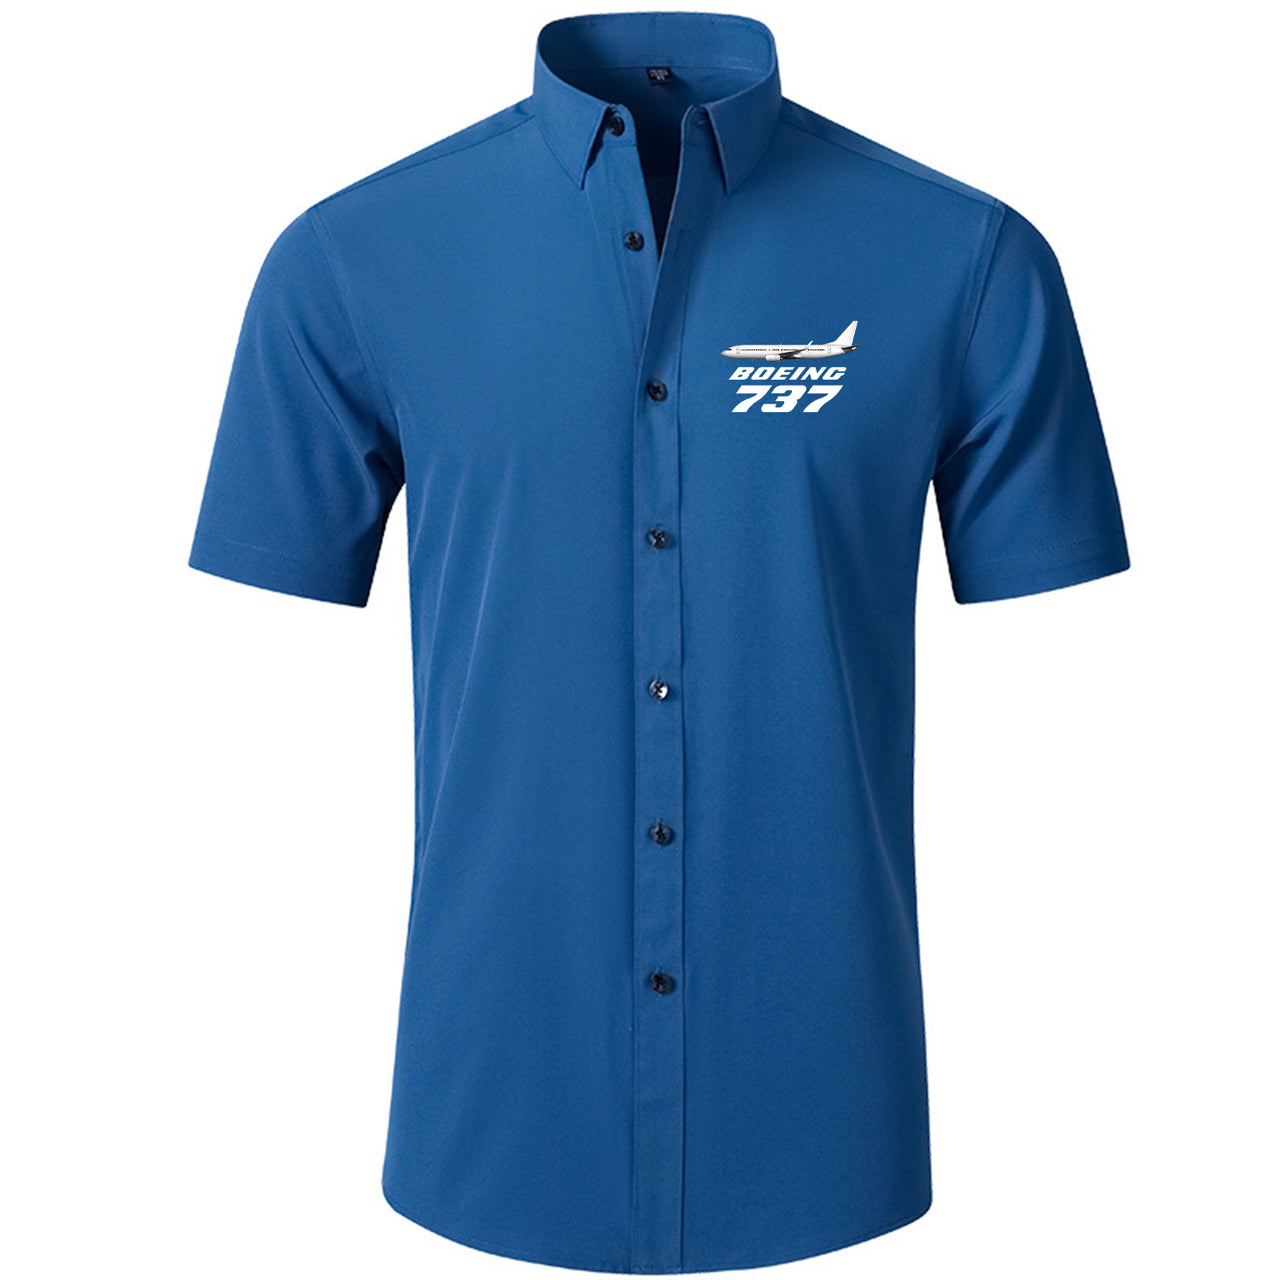 The Boeing 737 Designed Short Sleeve Shirts